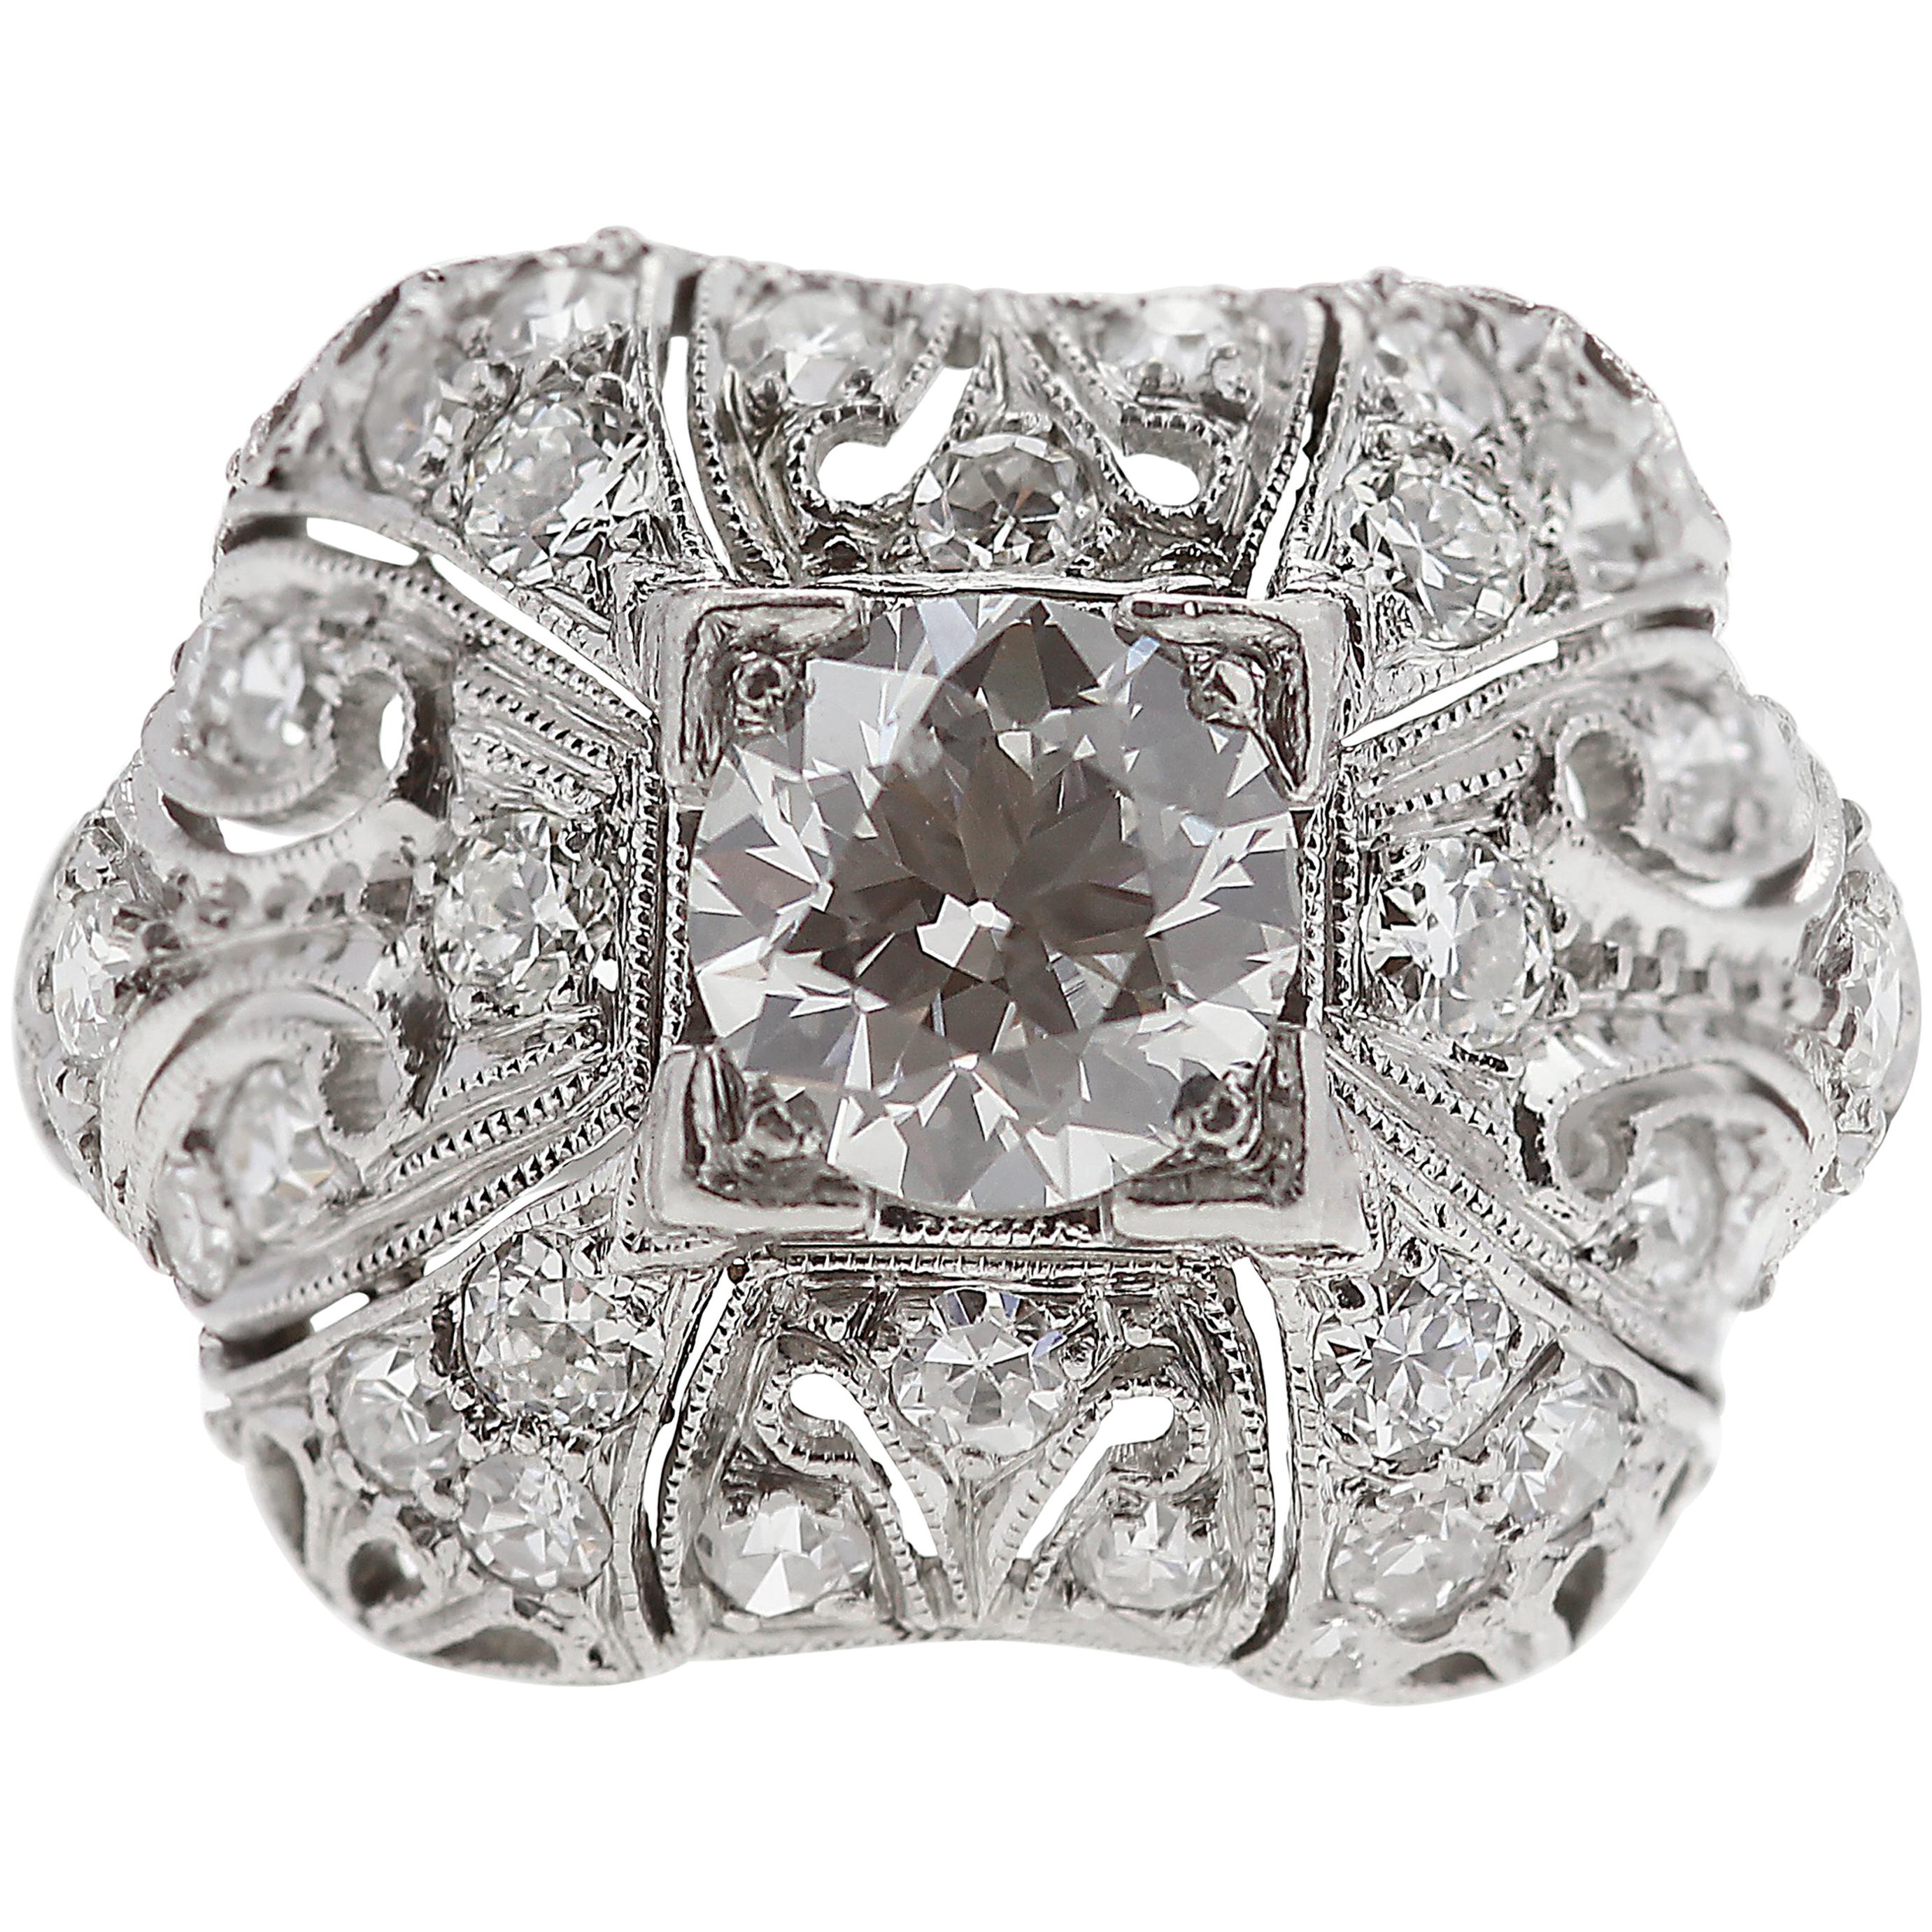 Art Deco 1920s Old European Cut Diamond Ring Set in Platinum